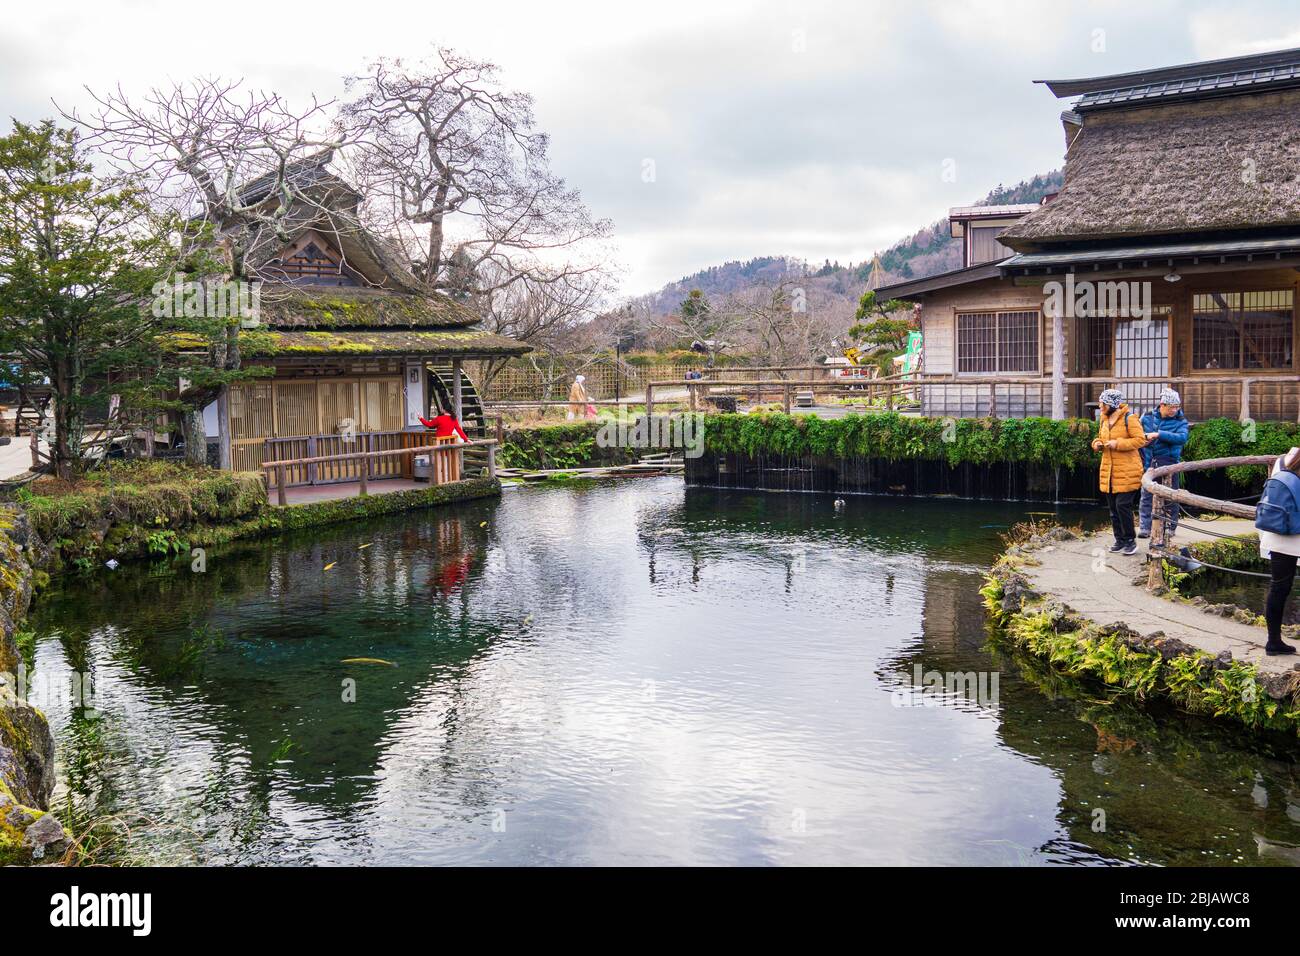 Oshino, Japón- 09Dec2019: Hakkai o ocho Meas, se refiere a las ocho piscinas de agua que son la atracción principal en Oshino Hakkai. Los visitantes pueden beber t. Foto de stock